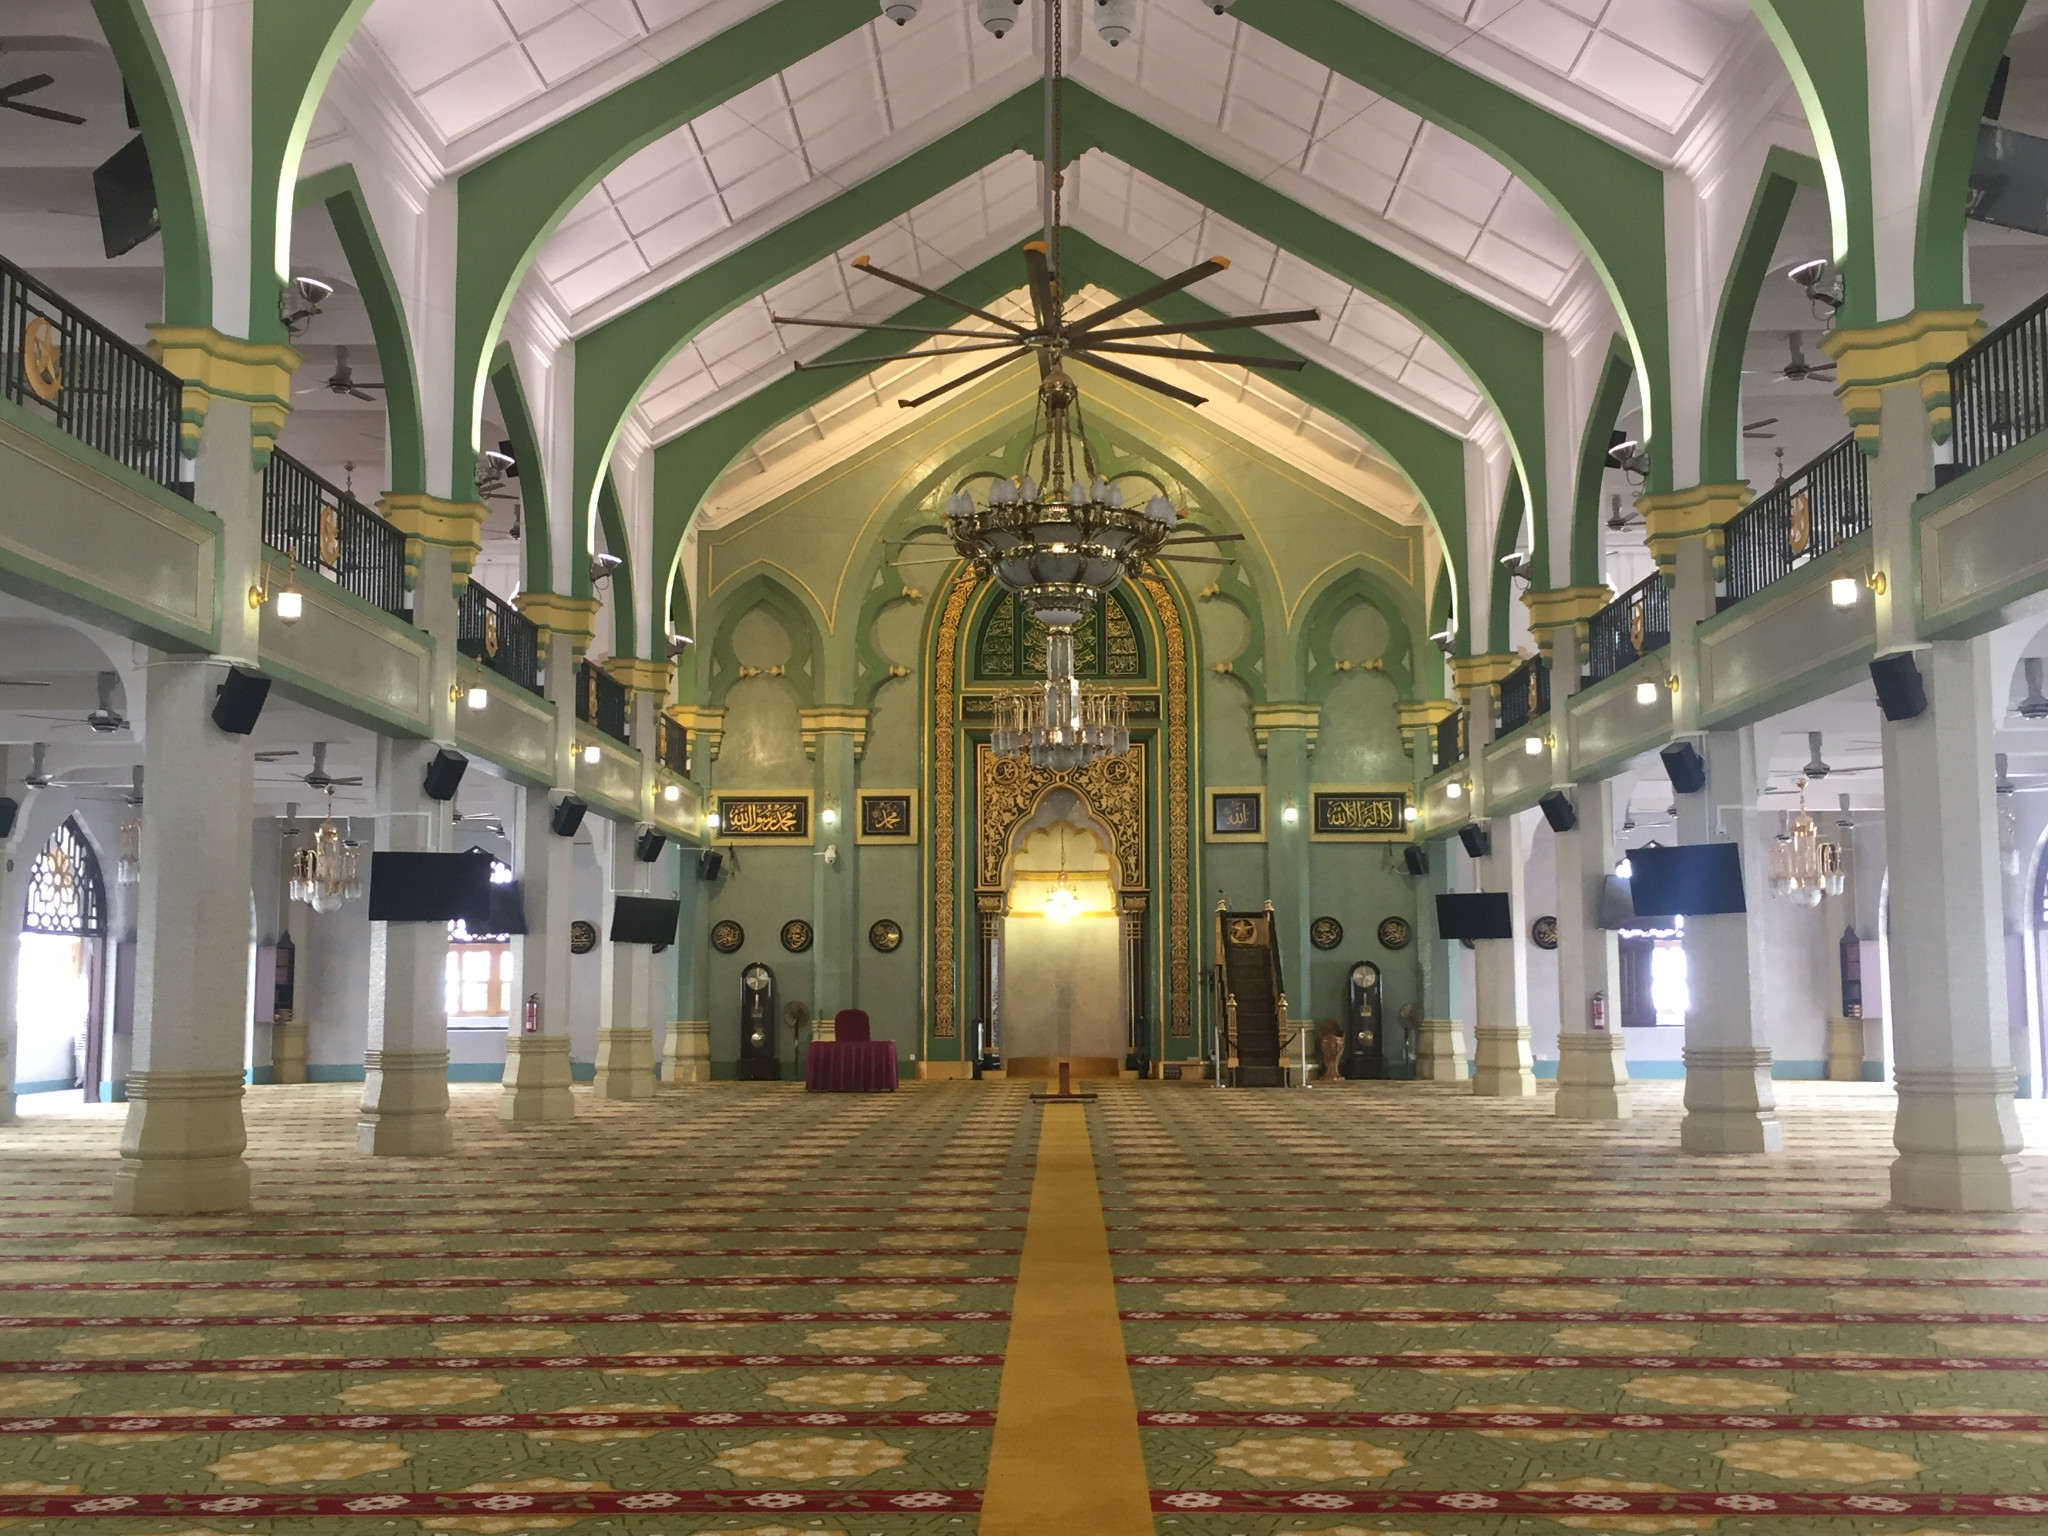 苏丹回教堂(masjid sultan)位于新加坡甘榜格南区的马斯喀特街与桥北